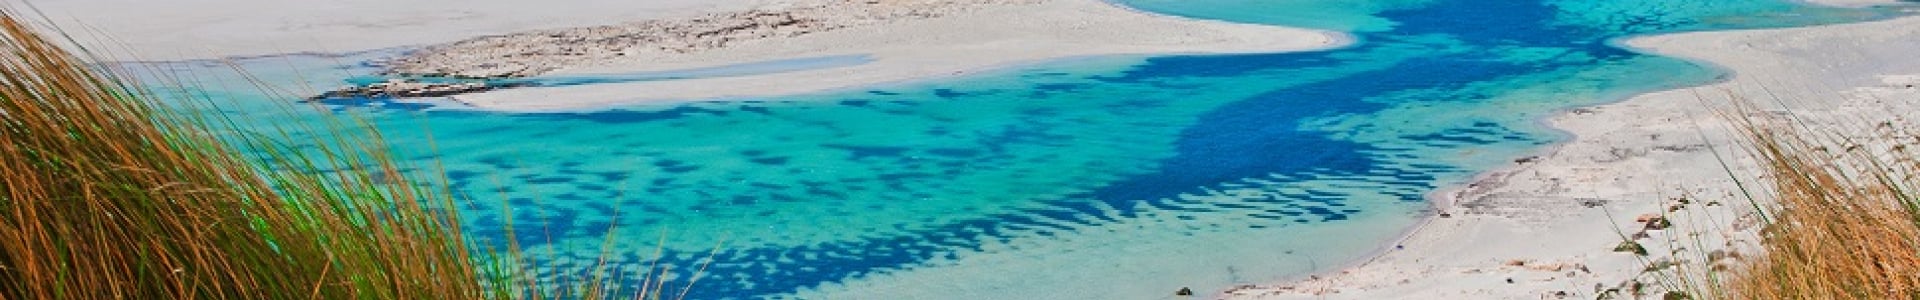 Voyages E.Leclerc : séjours îles grecques, 8j/7n, jusqu'à - 48%